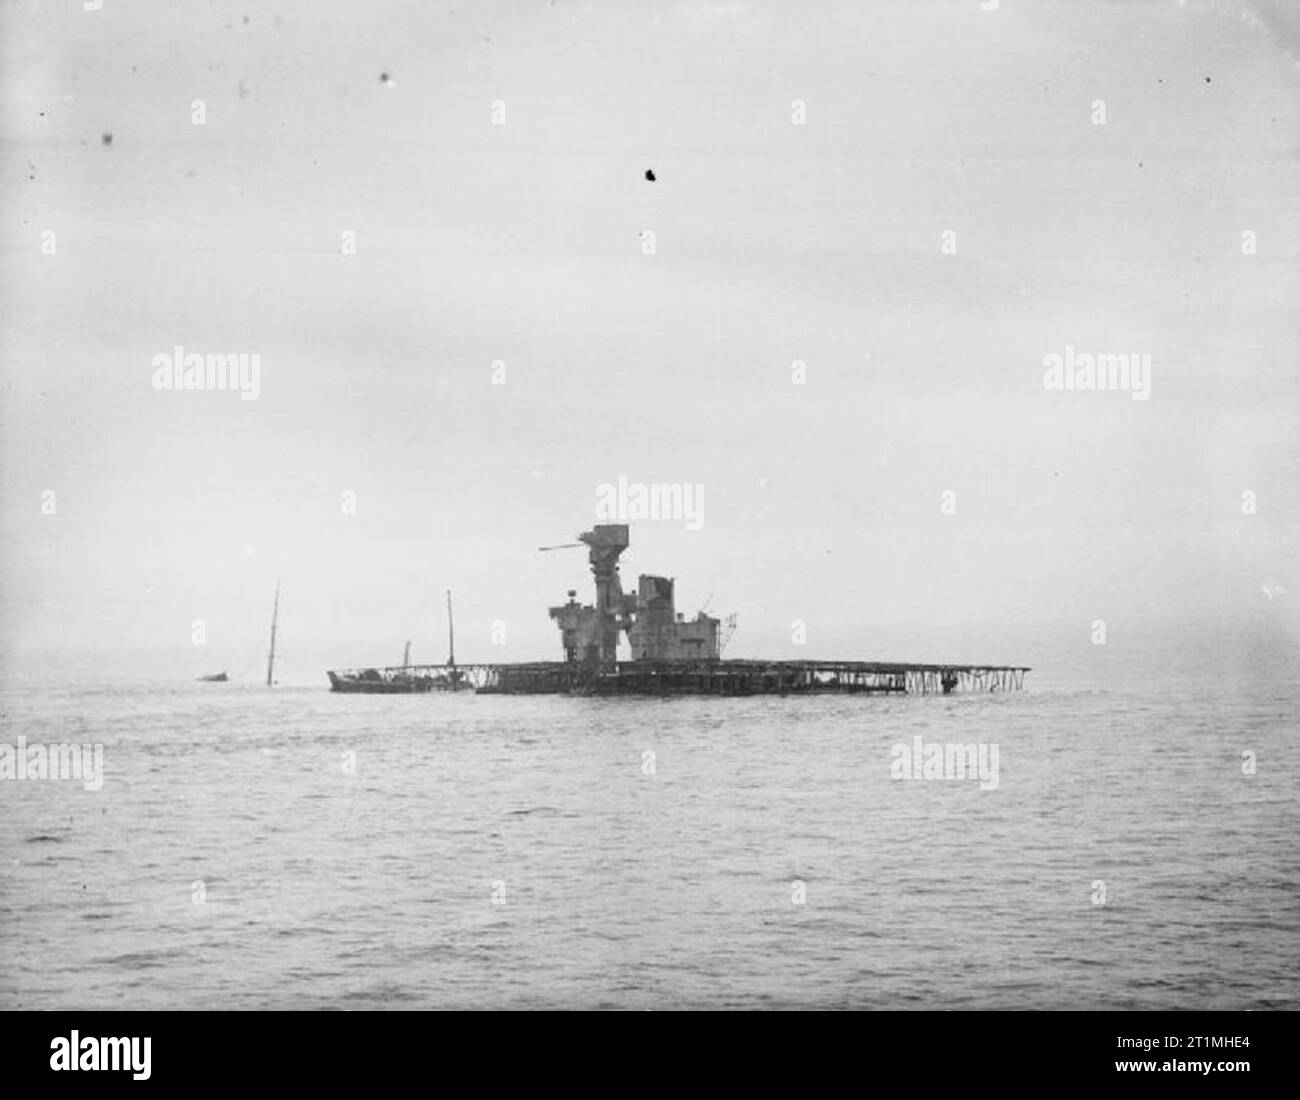 An Bord der Zerstörer HMS Whaddon eskortieren einen Konvoi. 3. bis 10. Oktober 1941, Begleitung einen Konvoi von Rosyth nach Sheerness und zurück. Blick auf Flotte Ausschreibung C, aus Lincolnshire Coast. Flotte Ausschreibung C war das en:SS Zealandic (1911), ein en: Flotte Ausschreibung als Lockvogel verwendet. Es war beabsichtigt, wie en aussehen: HMS Hermes (95), aber auf Grund lief auf das Wrack der SS Ahamo am 1941-06-03 und wurde dann durch E-Boote torpediert. Dieses Foto wurde ca. drei oder vier Monate später, nachdem das Schiff aufgegeben wurden. Stockfoto